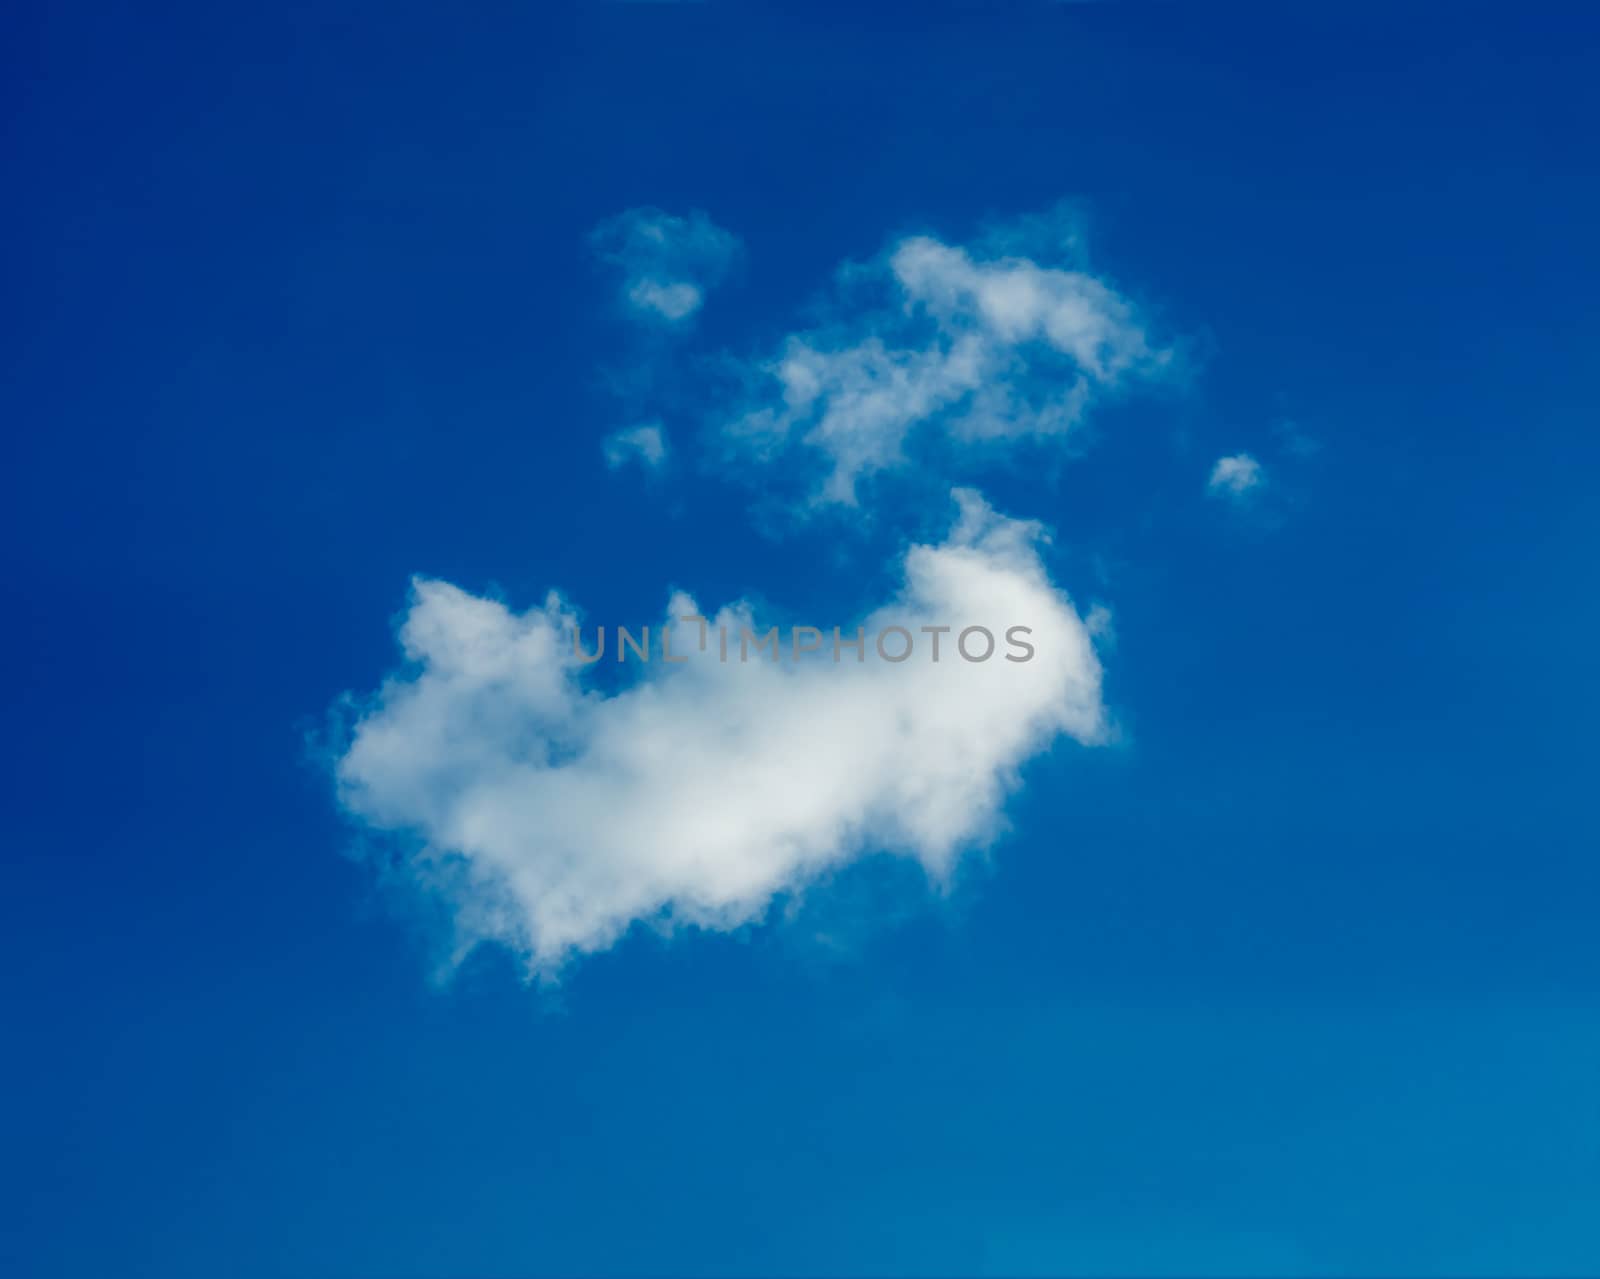 One simple cloud by olga_sweet